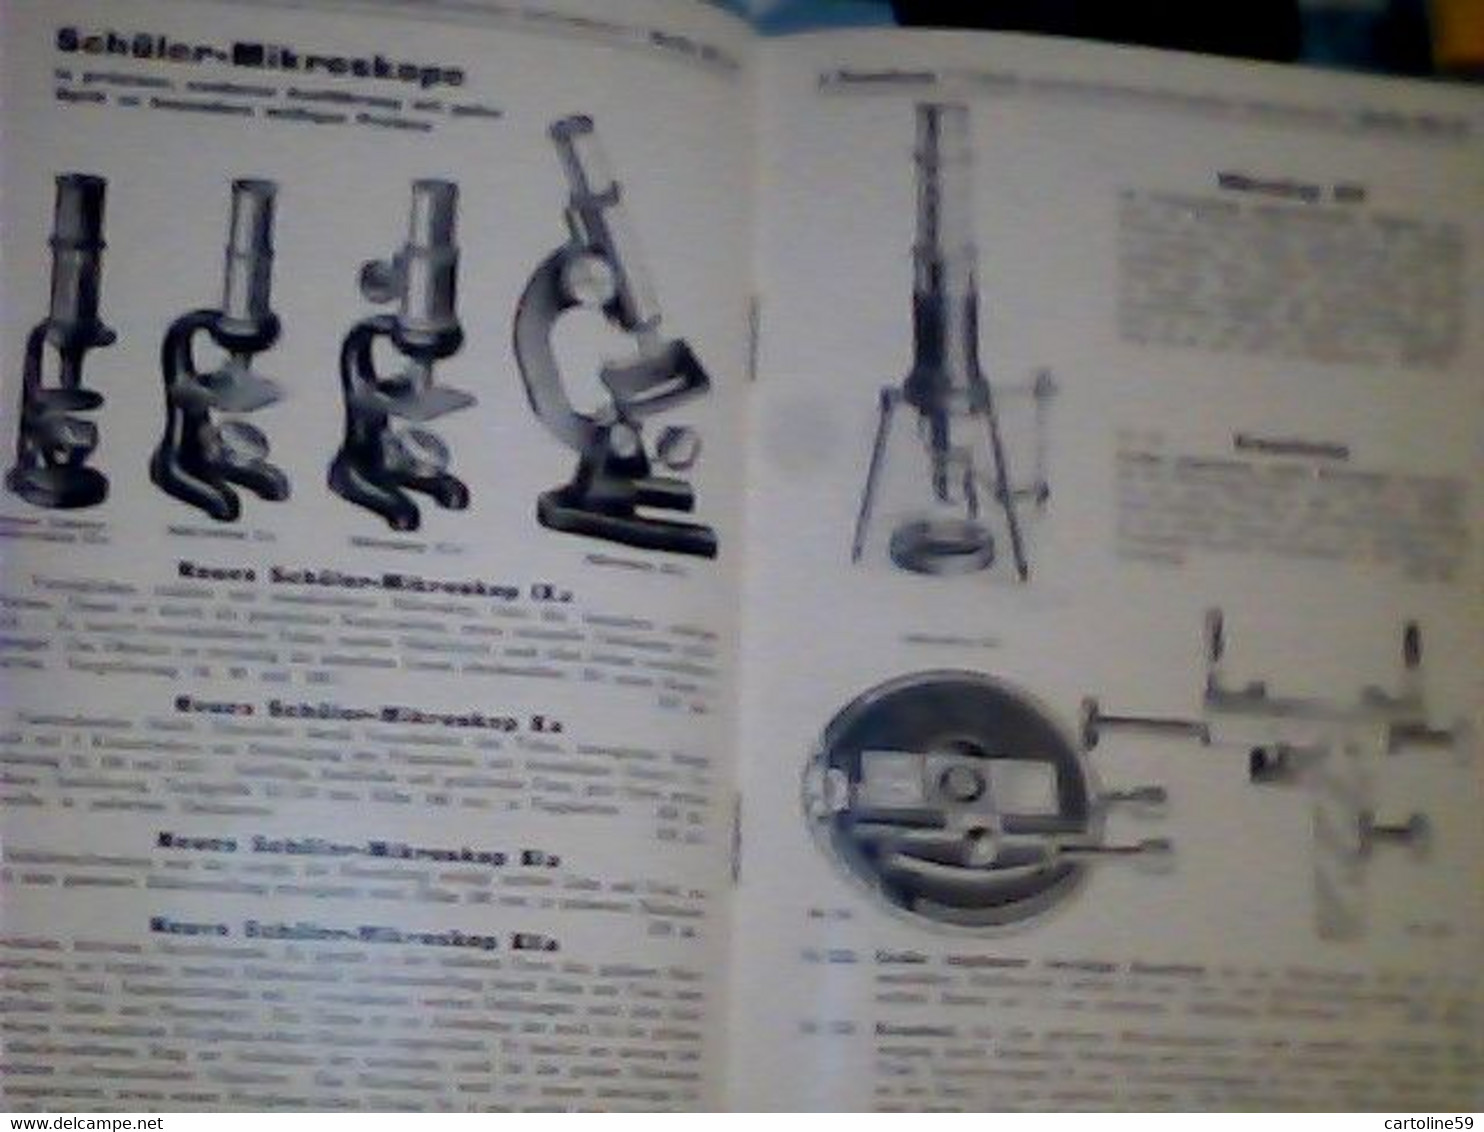 LIBRETTO MICROSCOPIO ROSENBAUM BERLIN FABRIK OPTISCH MIKROSKOP PREISLISTELETTER 1932 IQ8312 - Catálogos